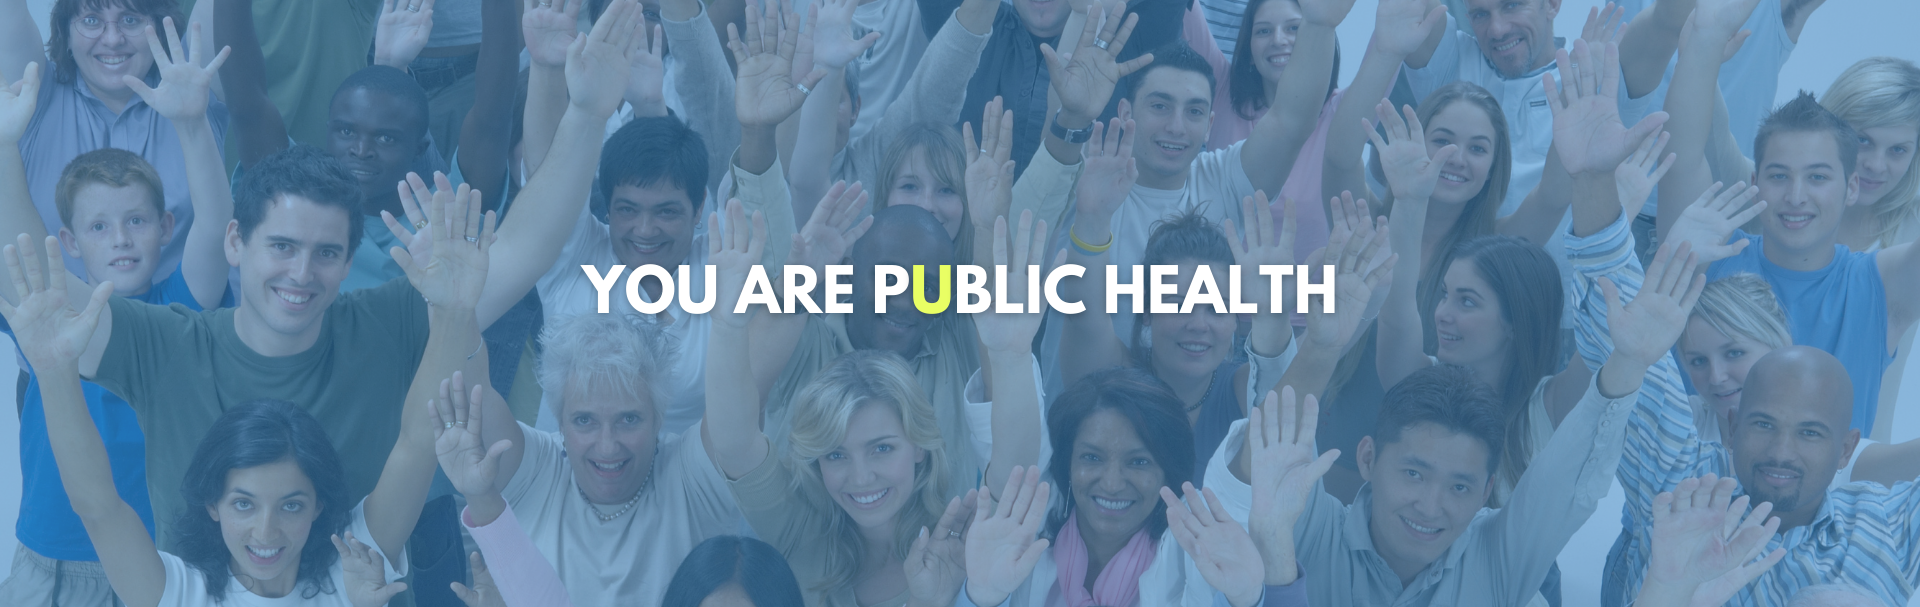 you are public health